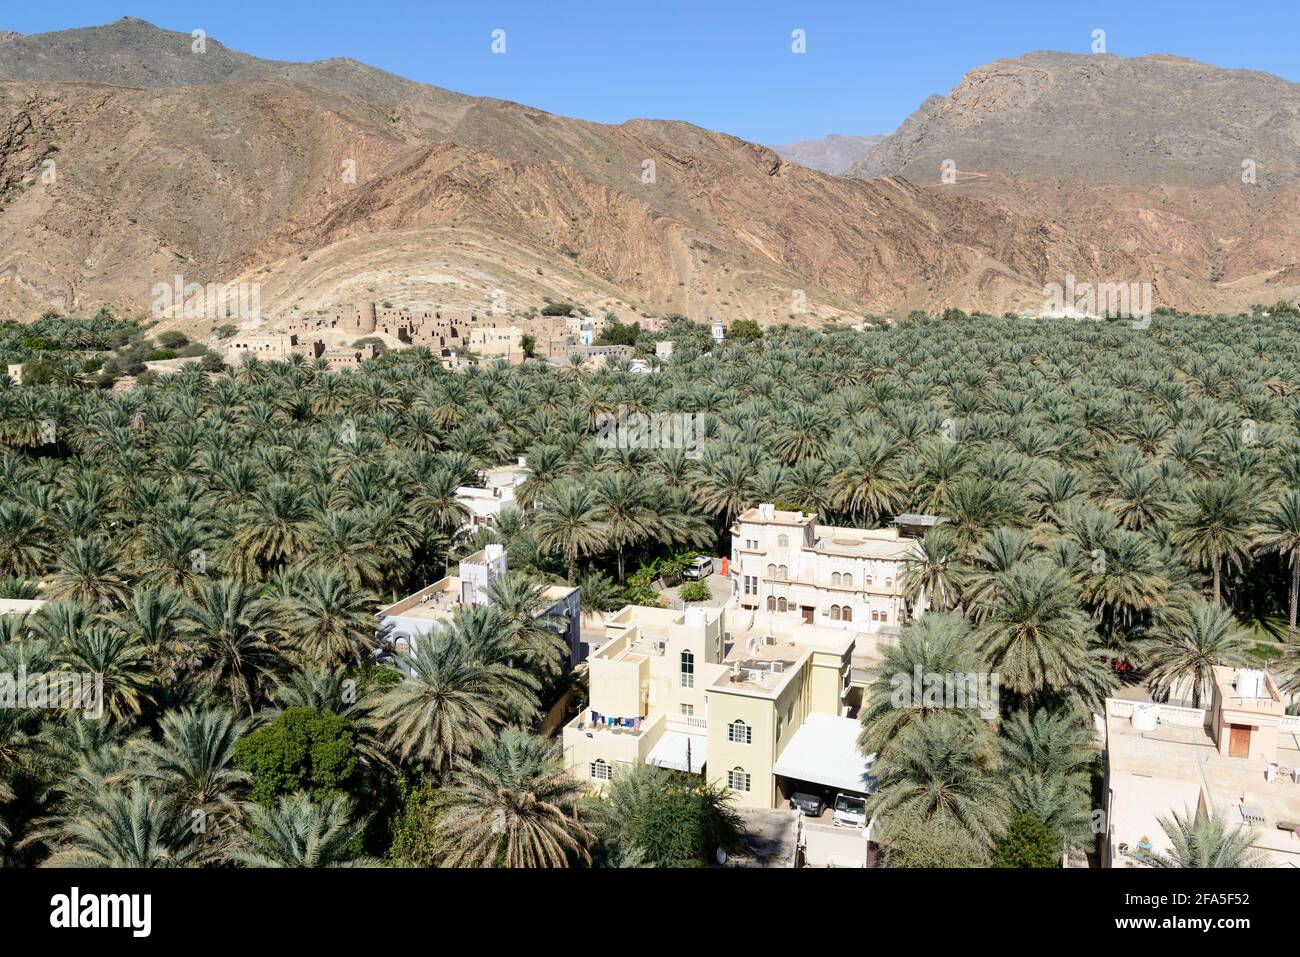 Tal des neuen und alten Dorfes Birkat Al Mawz mit seiner Dattelpalmenplantage in der Ad Dakhiliyah Region. Oman. Stockfoto